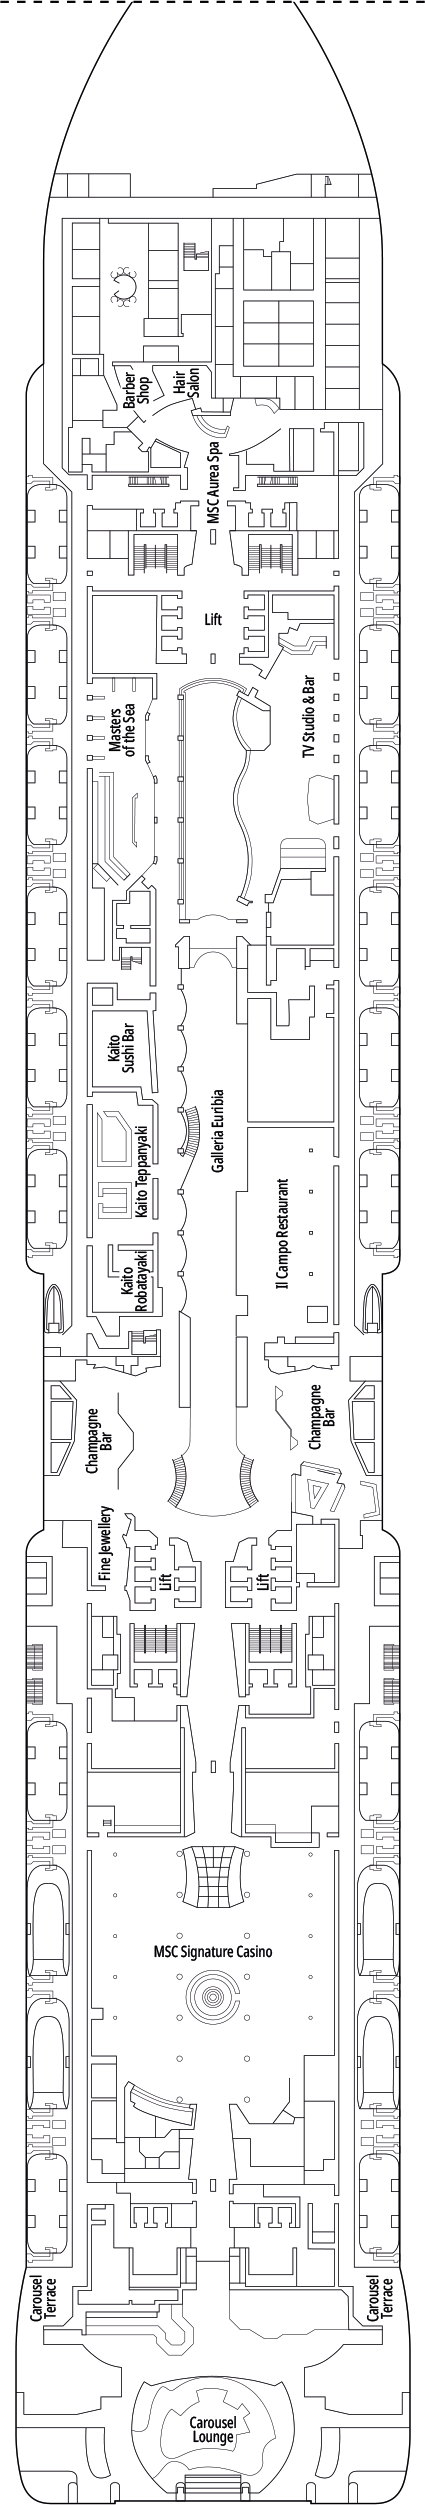 MSC Euribia - Decksplan Deck 7